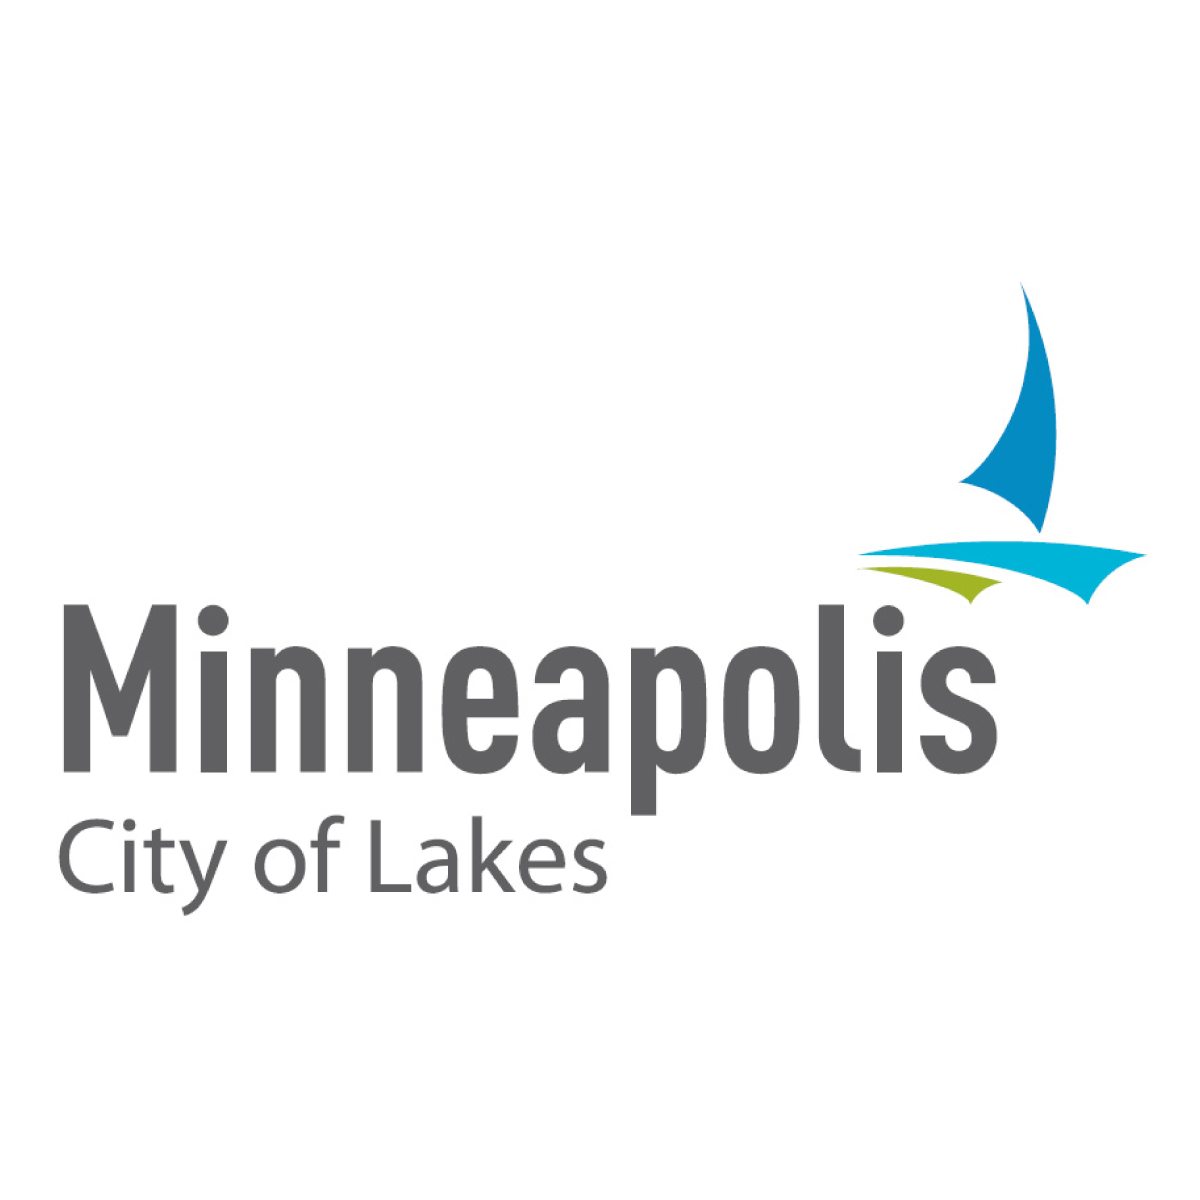 Ciudad de Minneapolis  
minneapolismn.gov